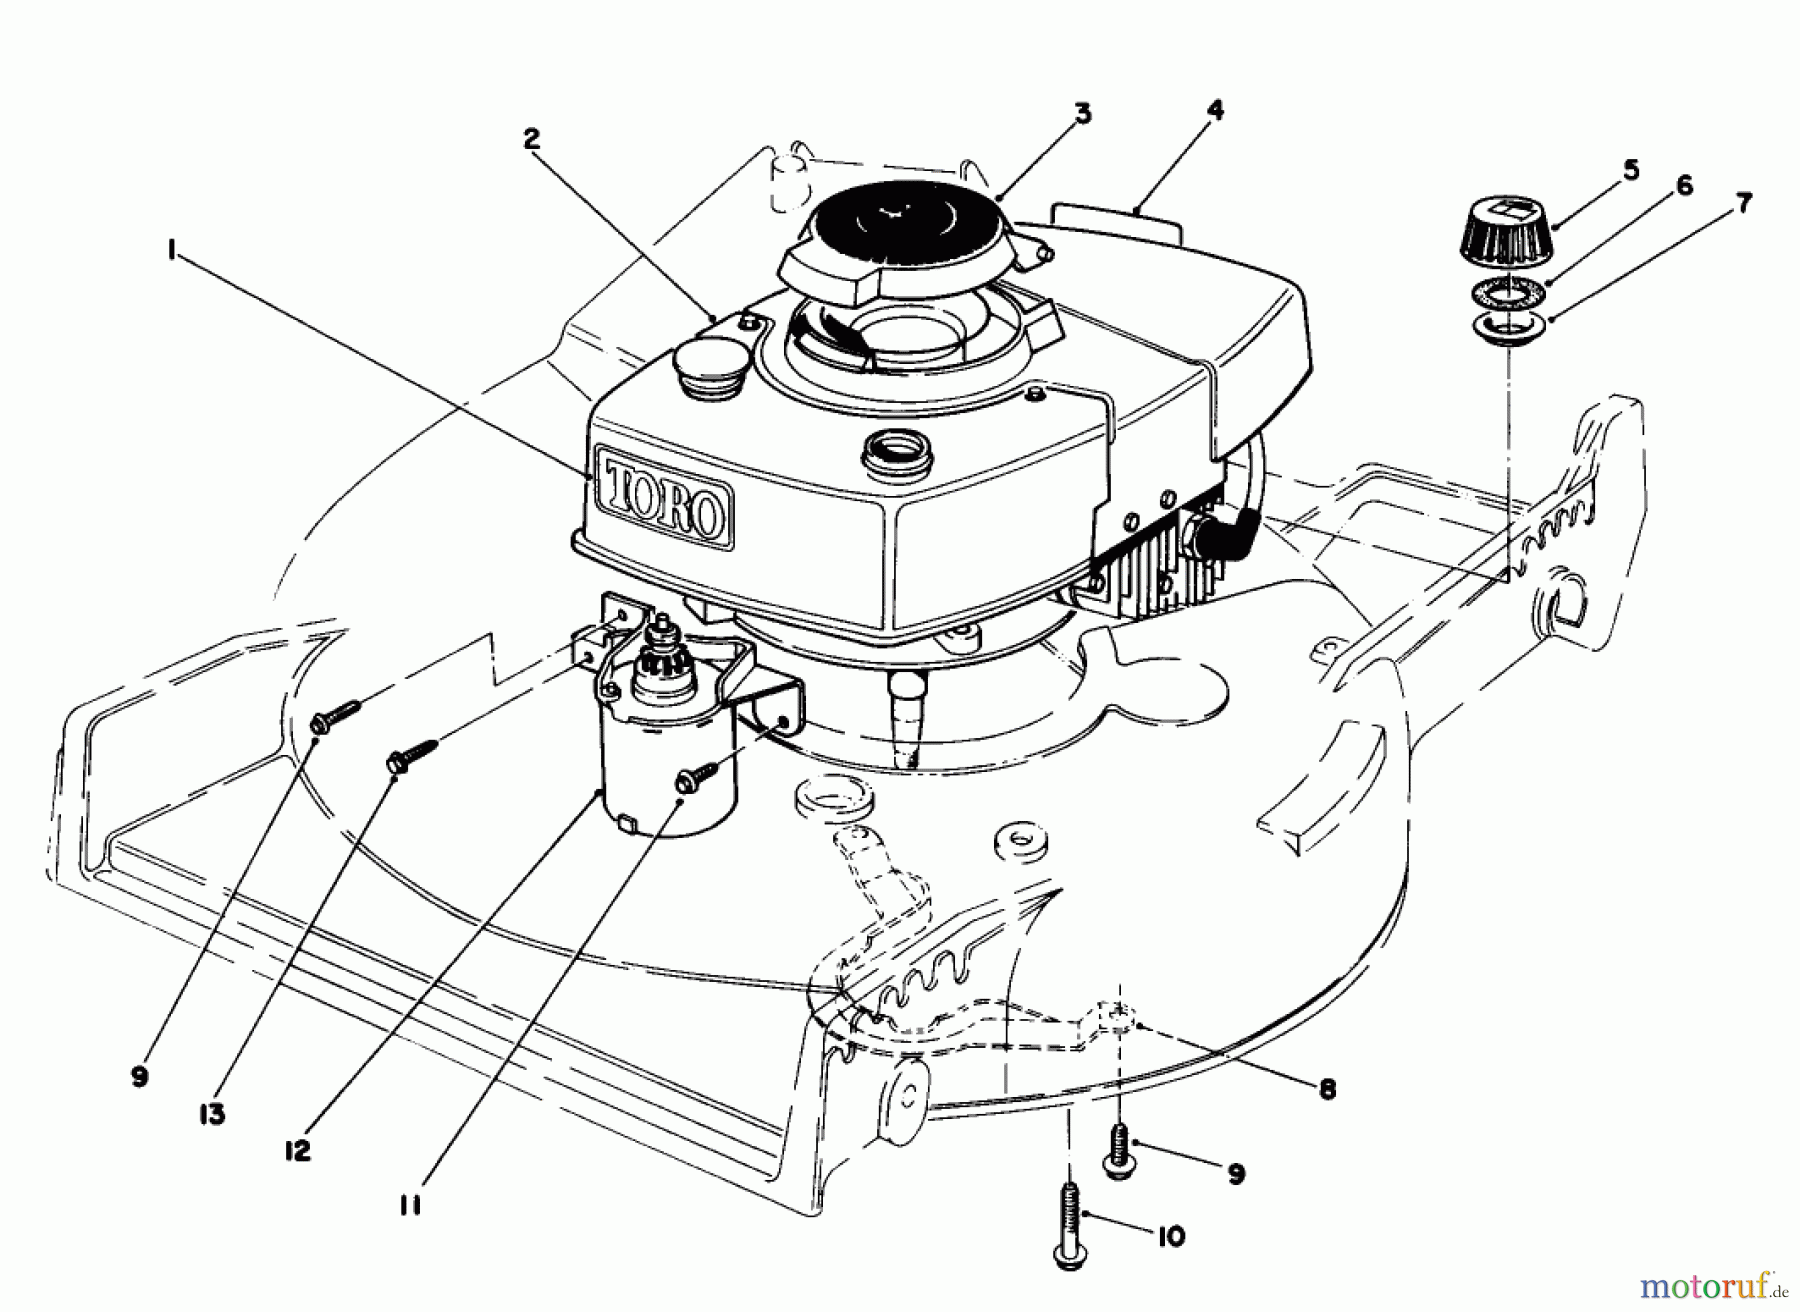  Toro Neu Mowers, Walk-Behind Seite 1 20676 - Toro Lawnmower, 1985 (5000001-5999999) ENGINE ASSEMBLY